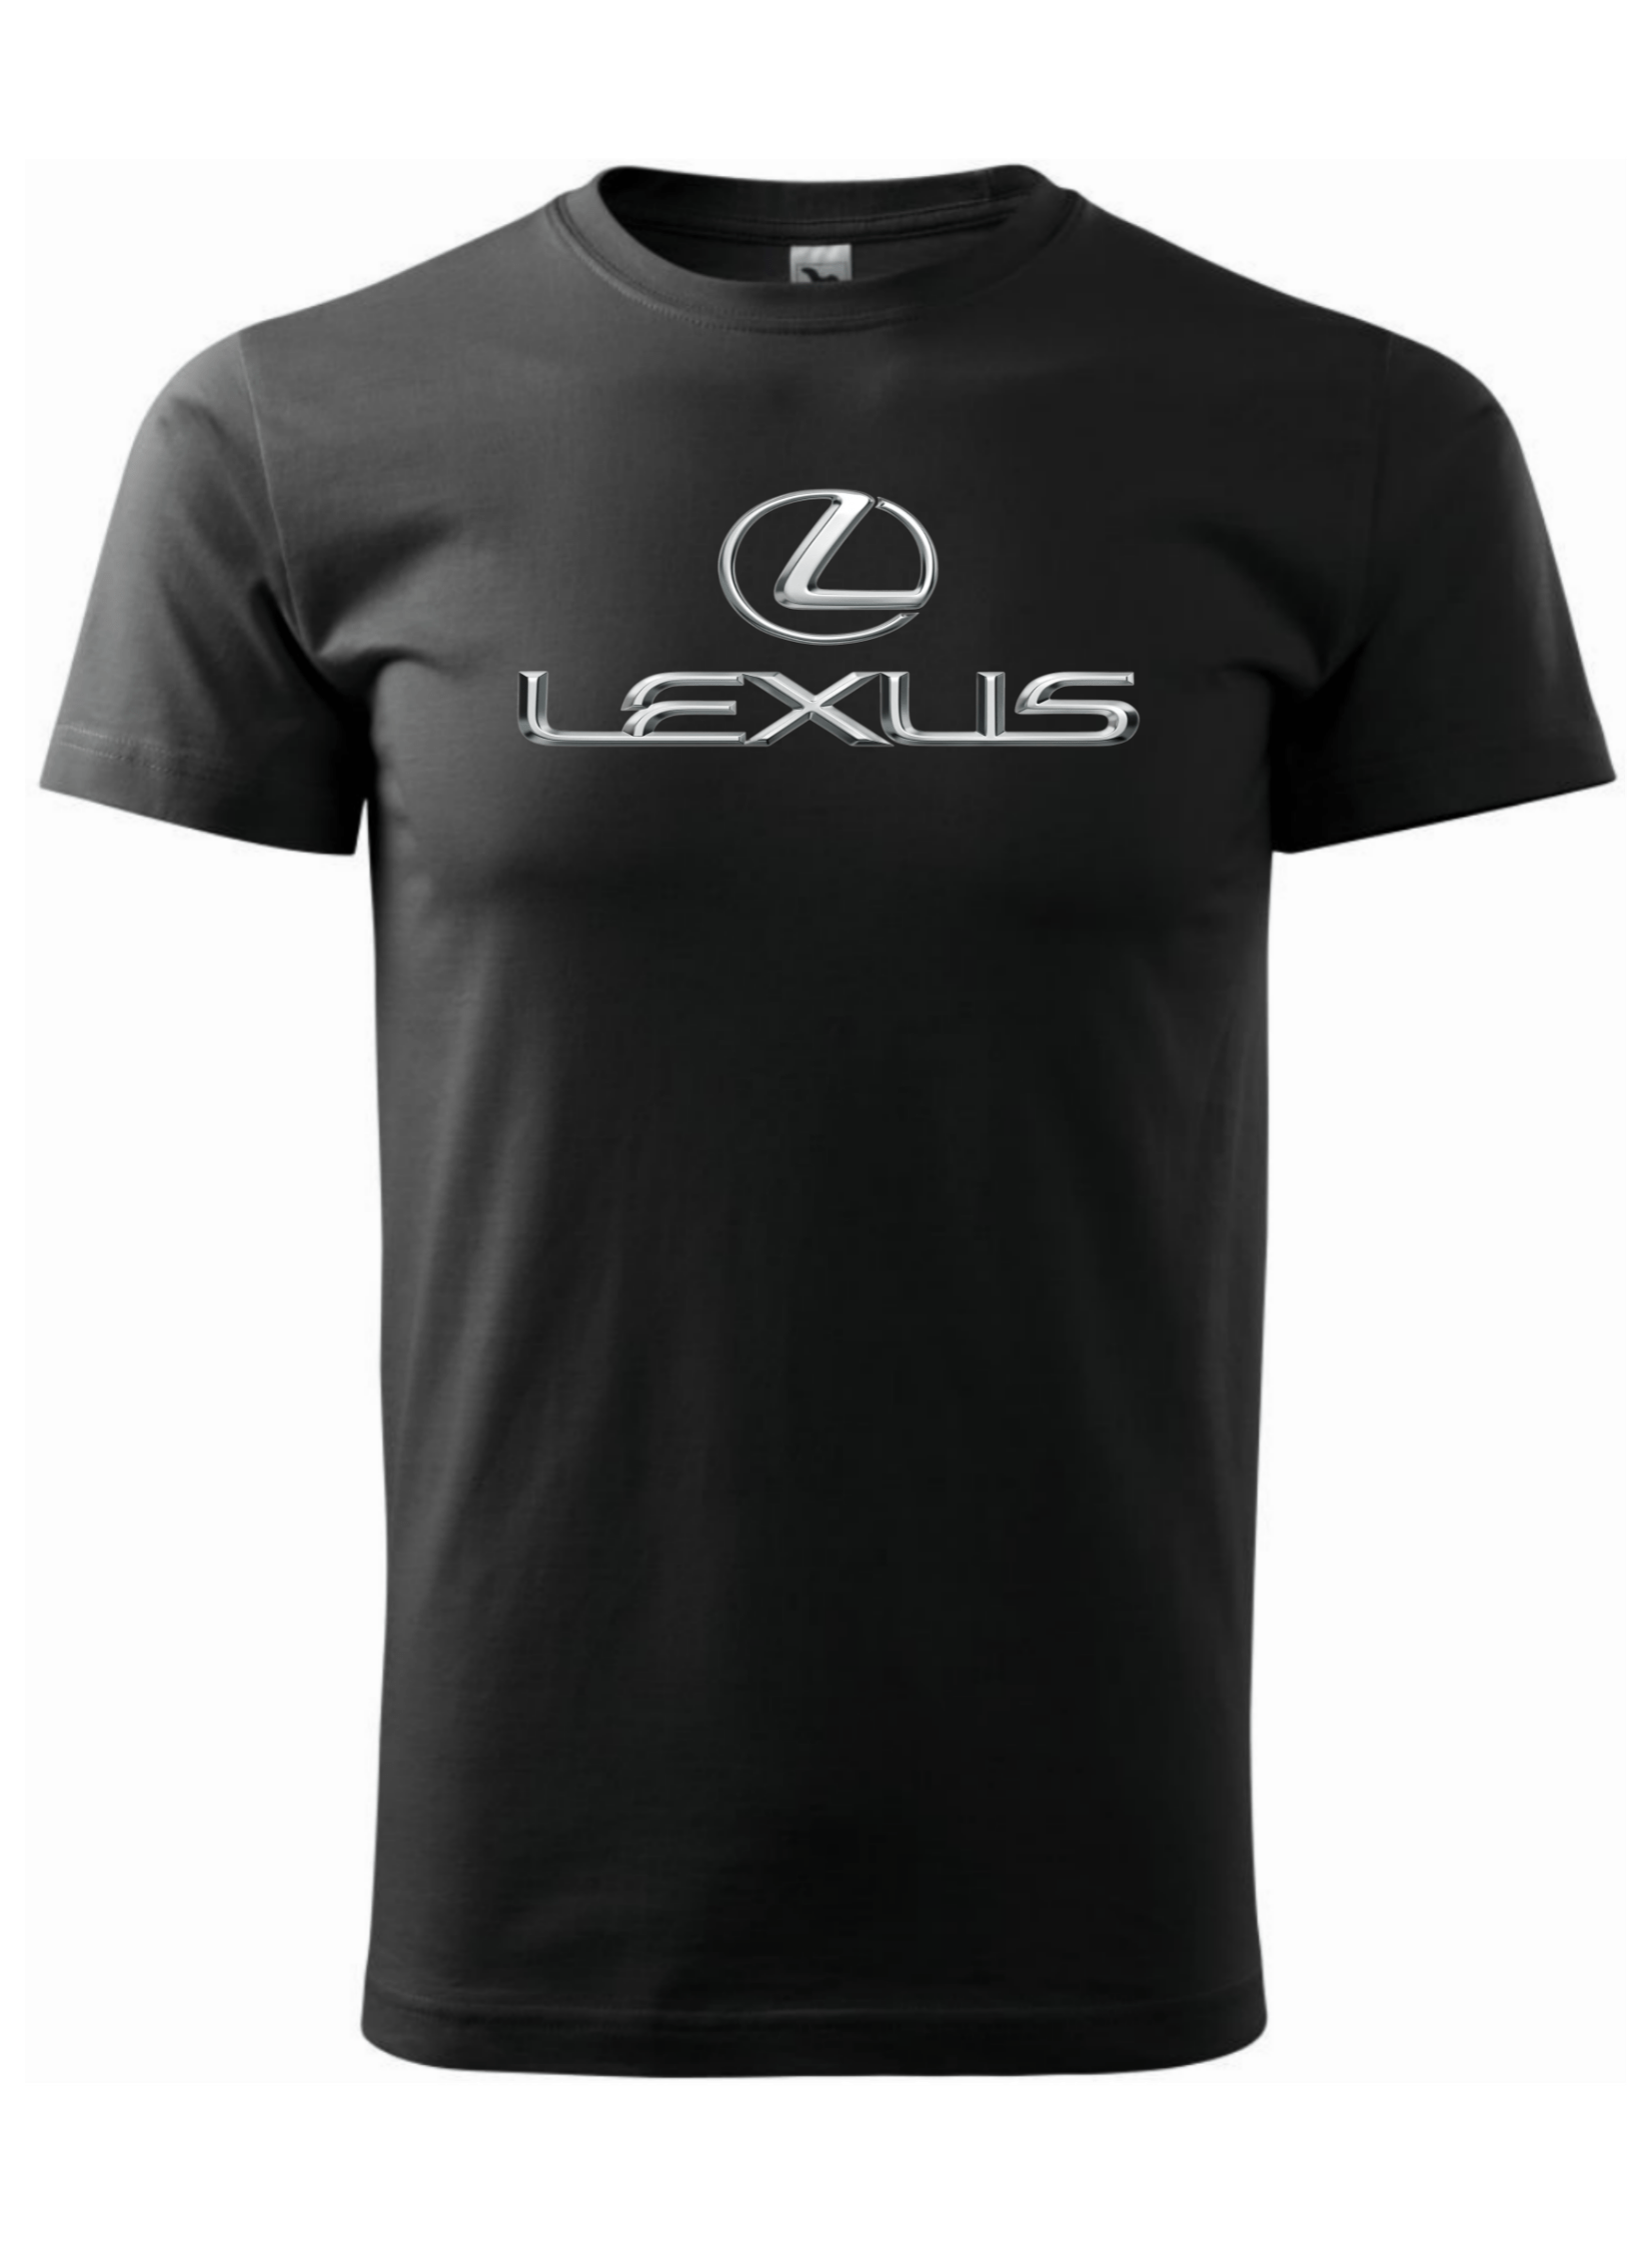 Pánské tričko s potiskem značky Lexus